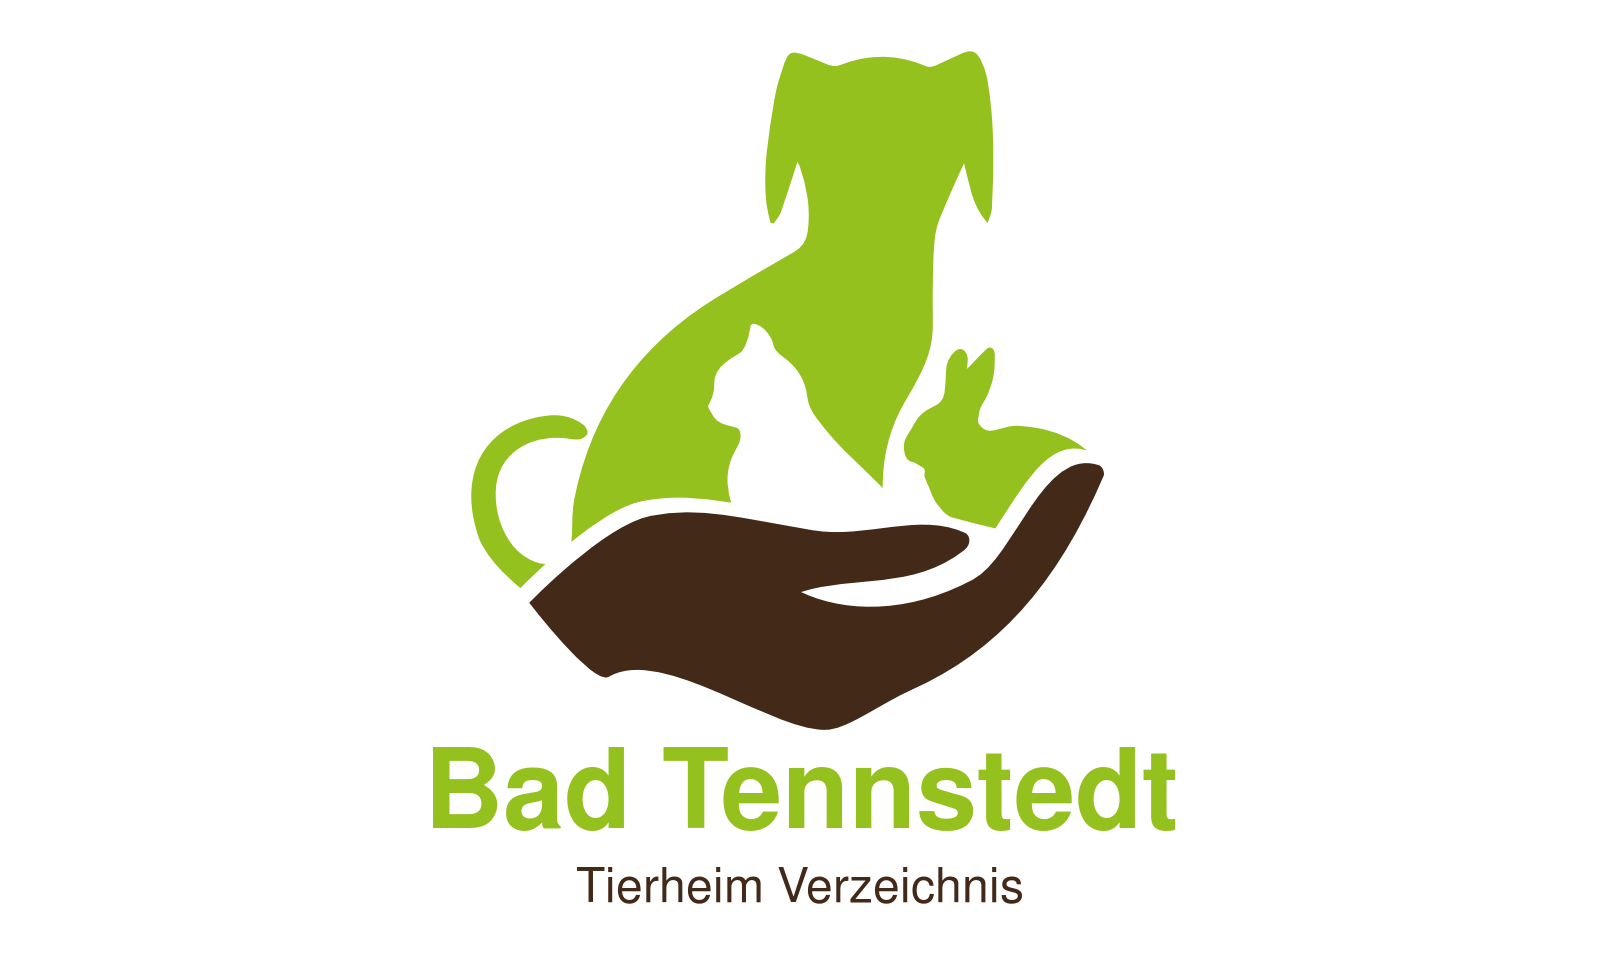 Tierheim Bad Tennstedt